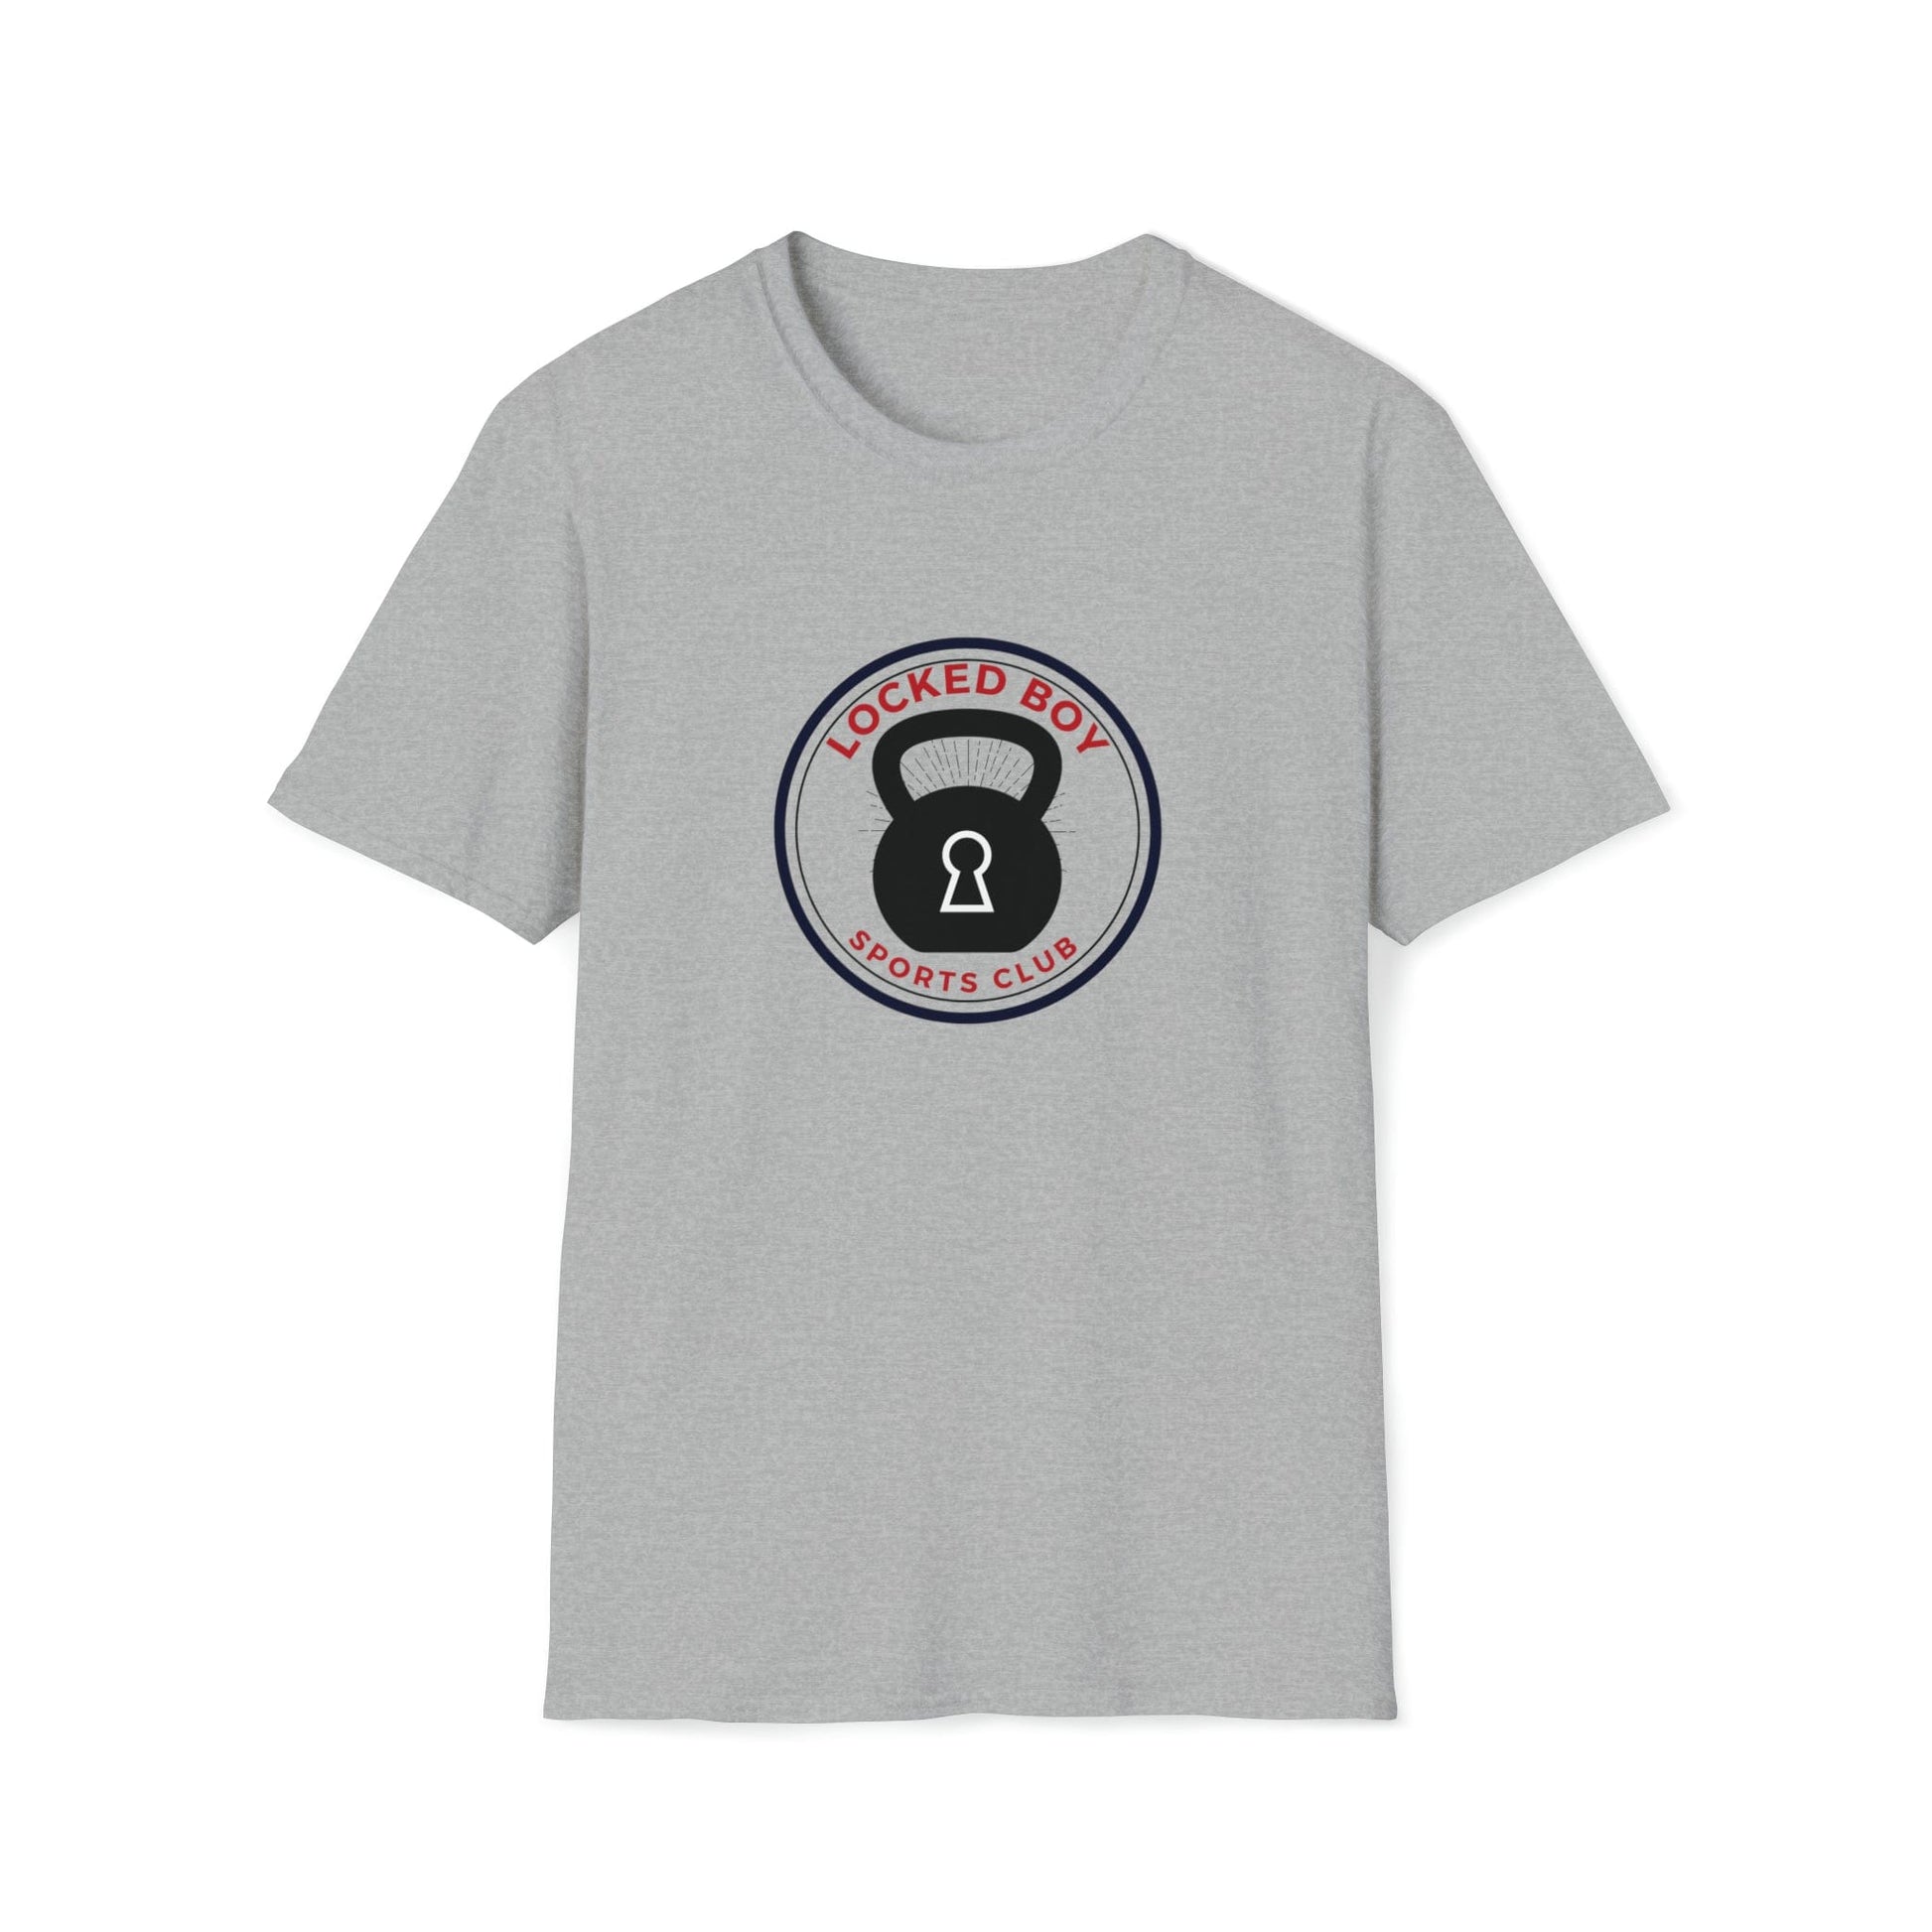 T-Shirt Sport Grey / S LockedBoy Sports Club - Chastity Tshirt Kettlebell LEATHERDADDY BATOR